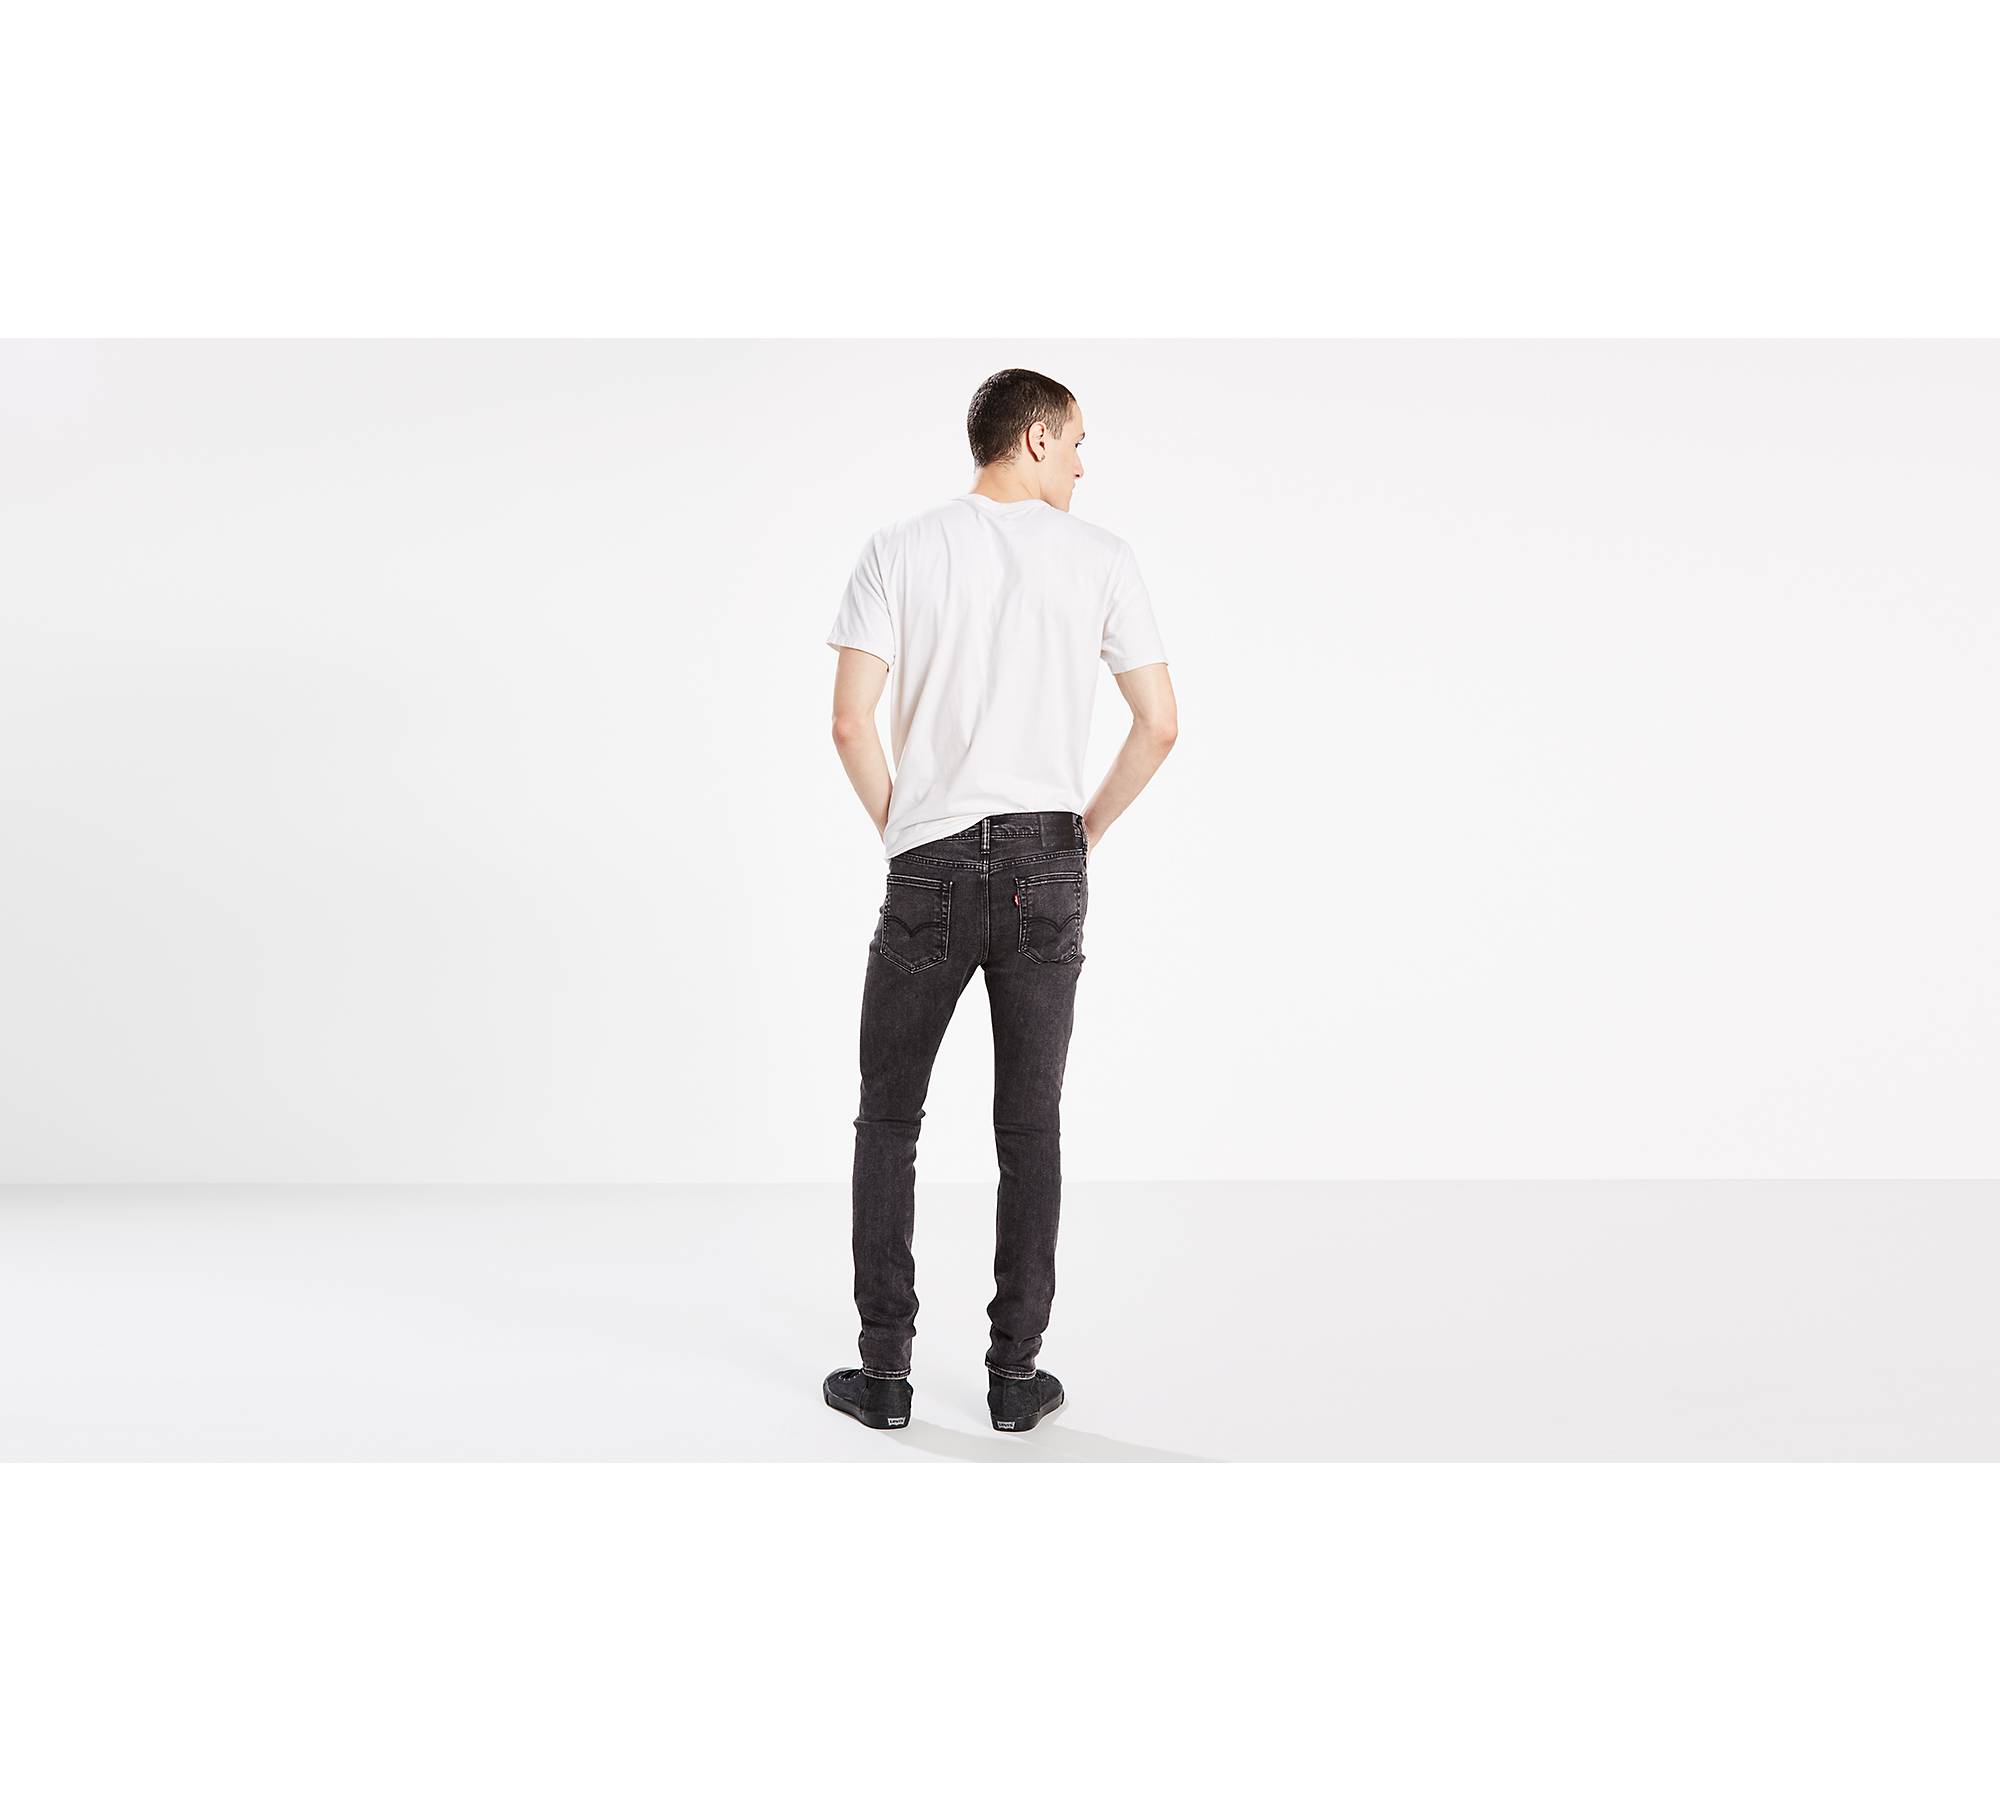 519™ Extreme Skinny Men's Jeans - Black | Levi's® US